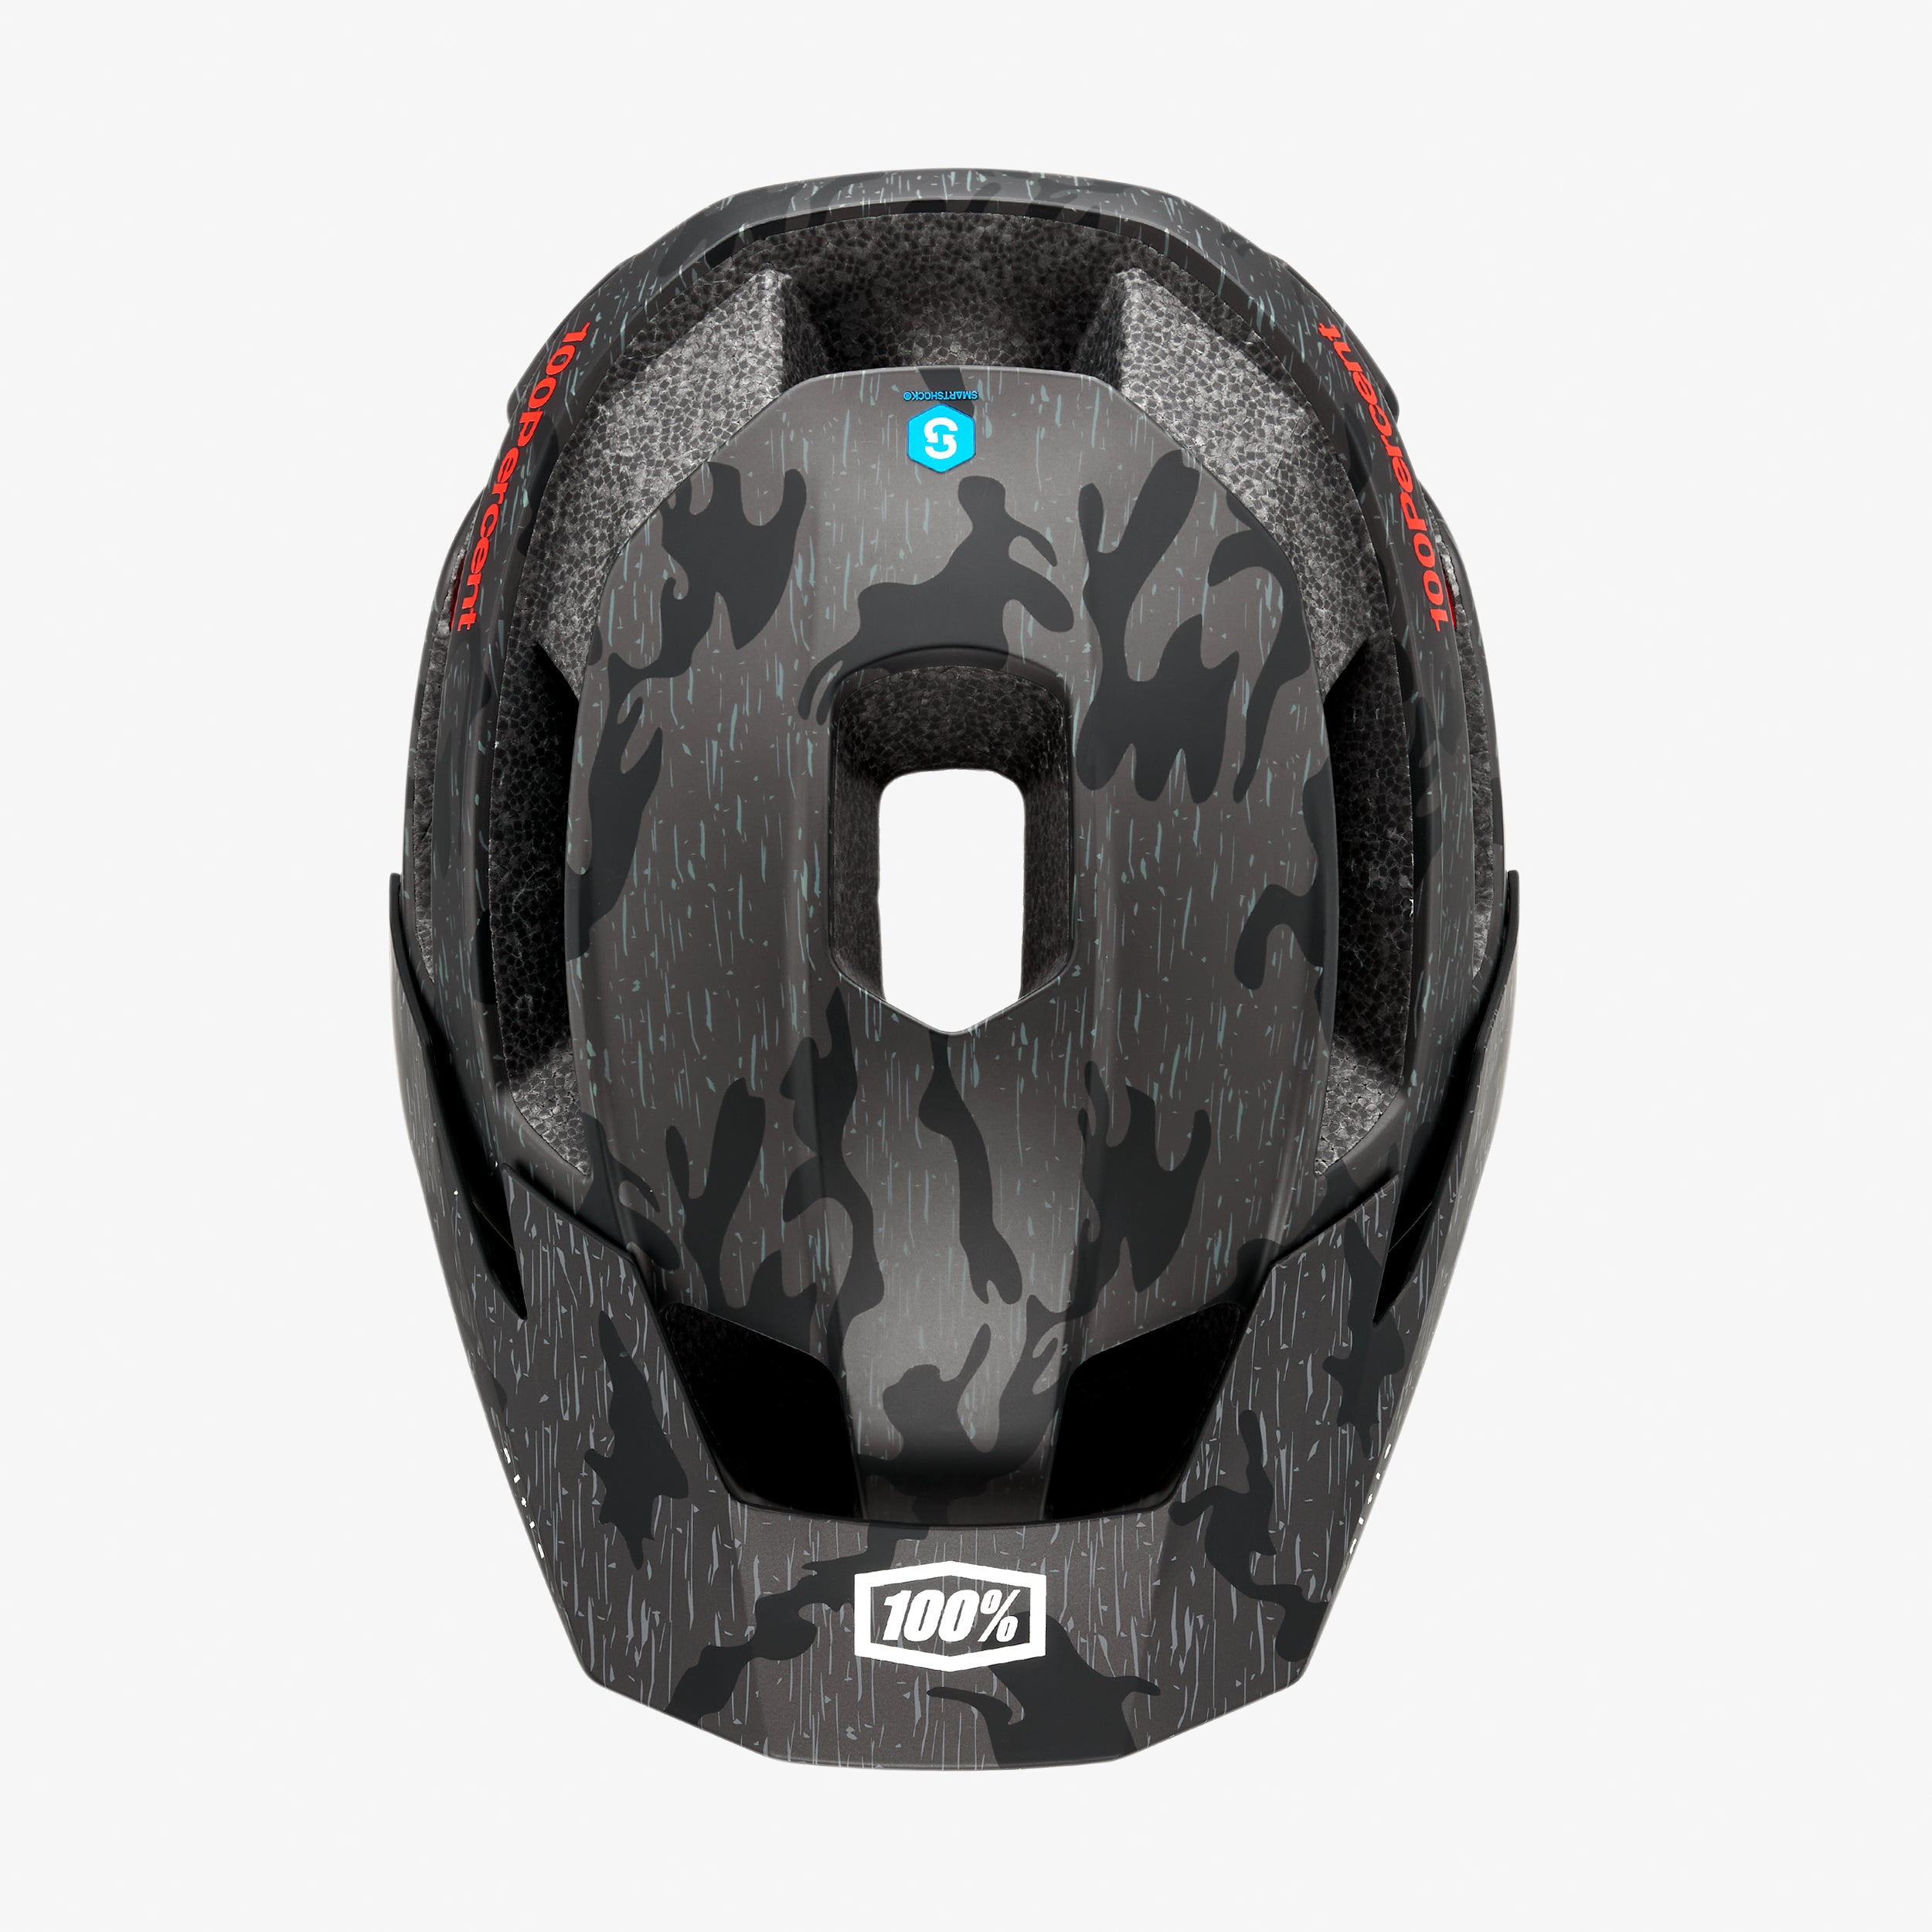 ALTIS Helmet Camo CPSC/CE